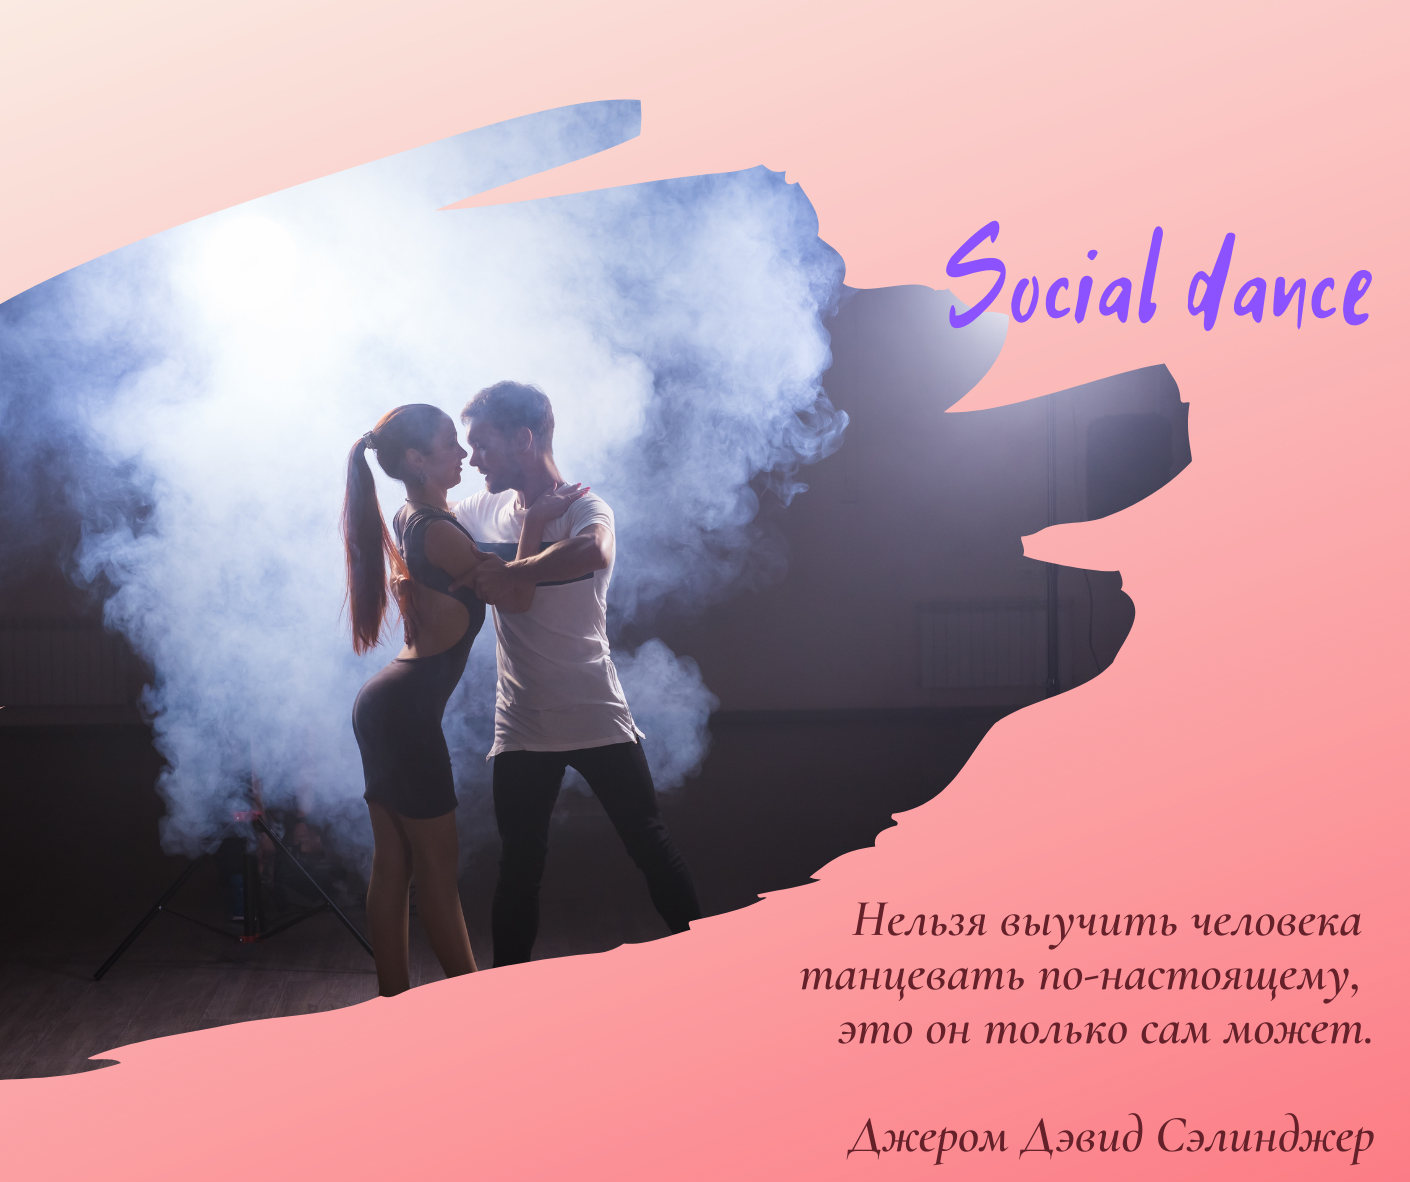 Social dance